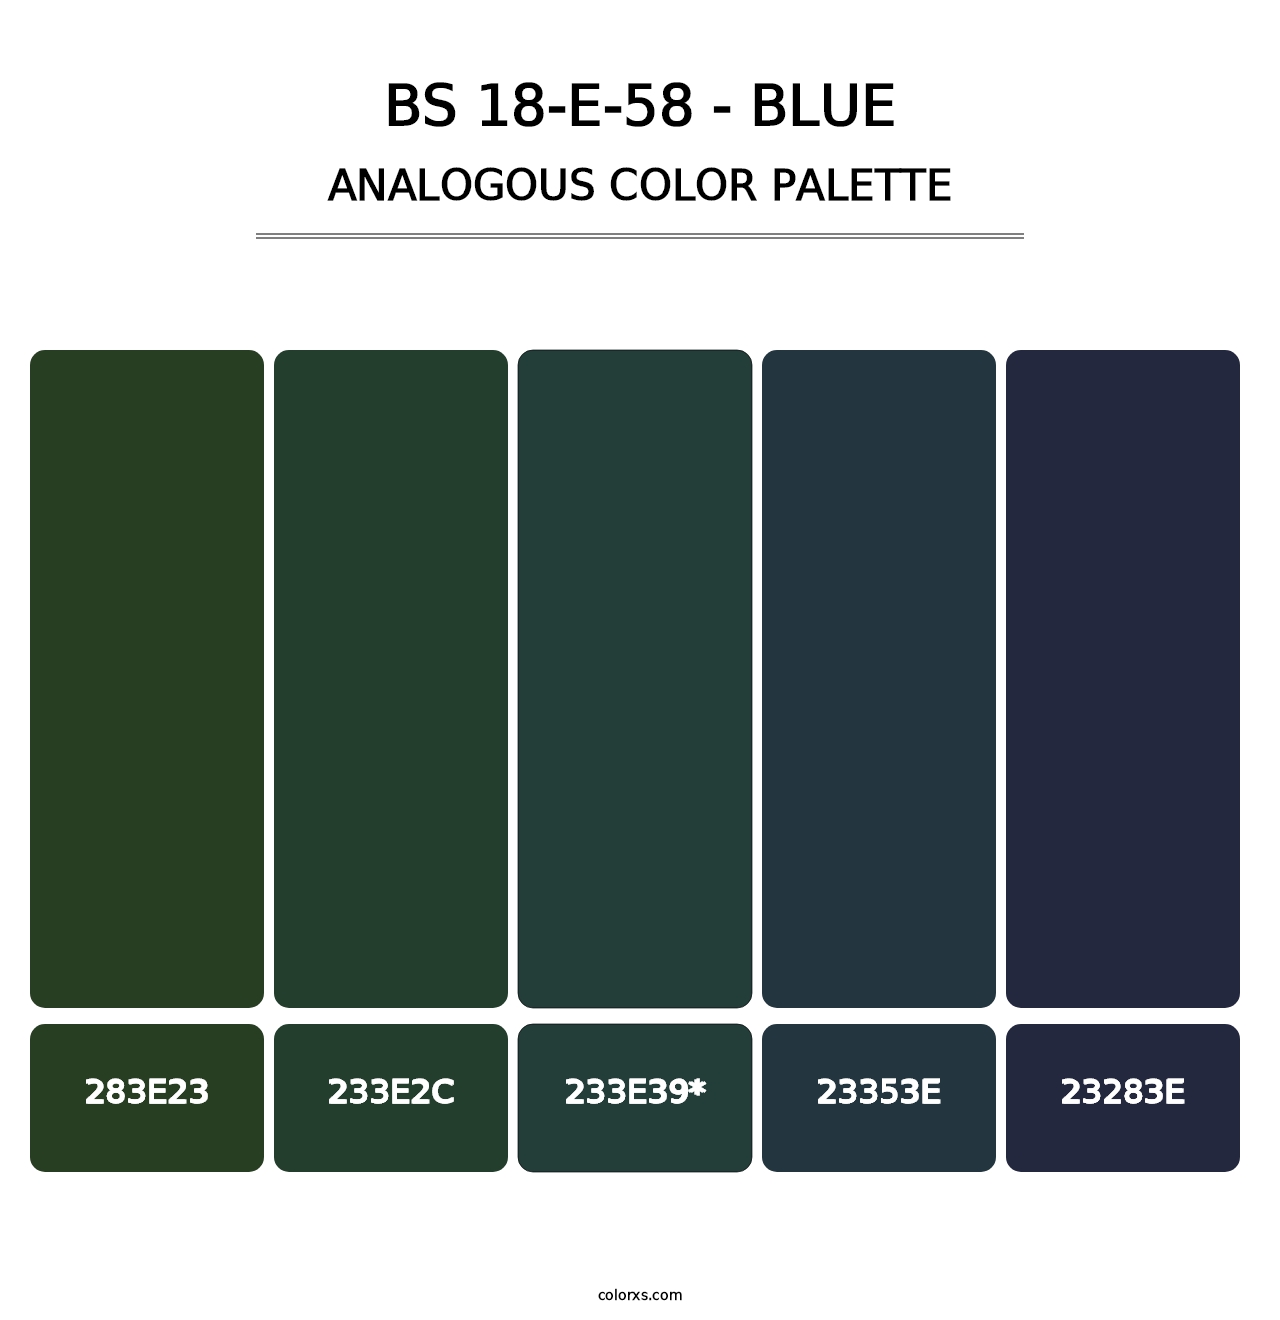 BS 18-E-58 - Blue - Analogous Color Palette